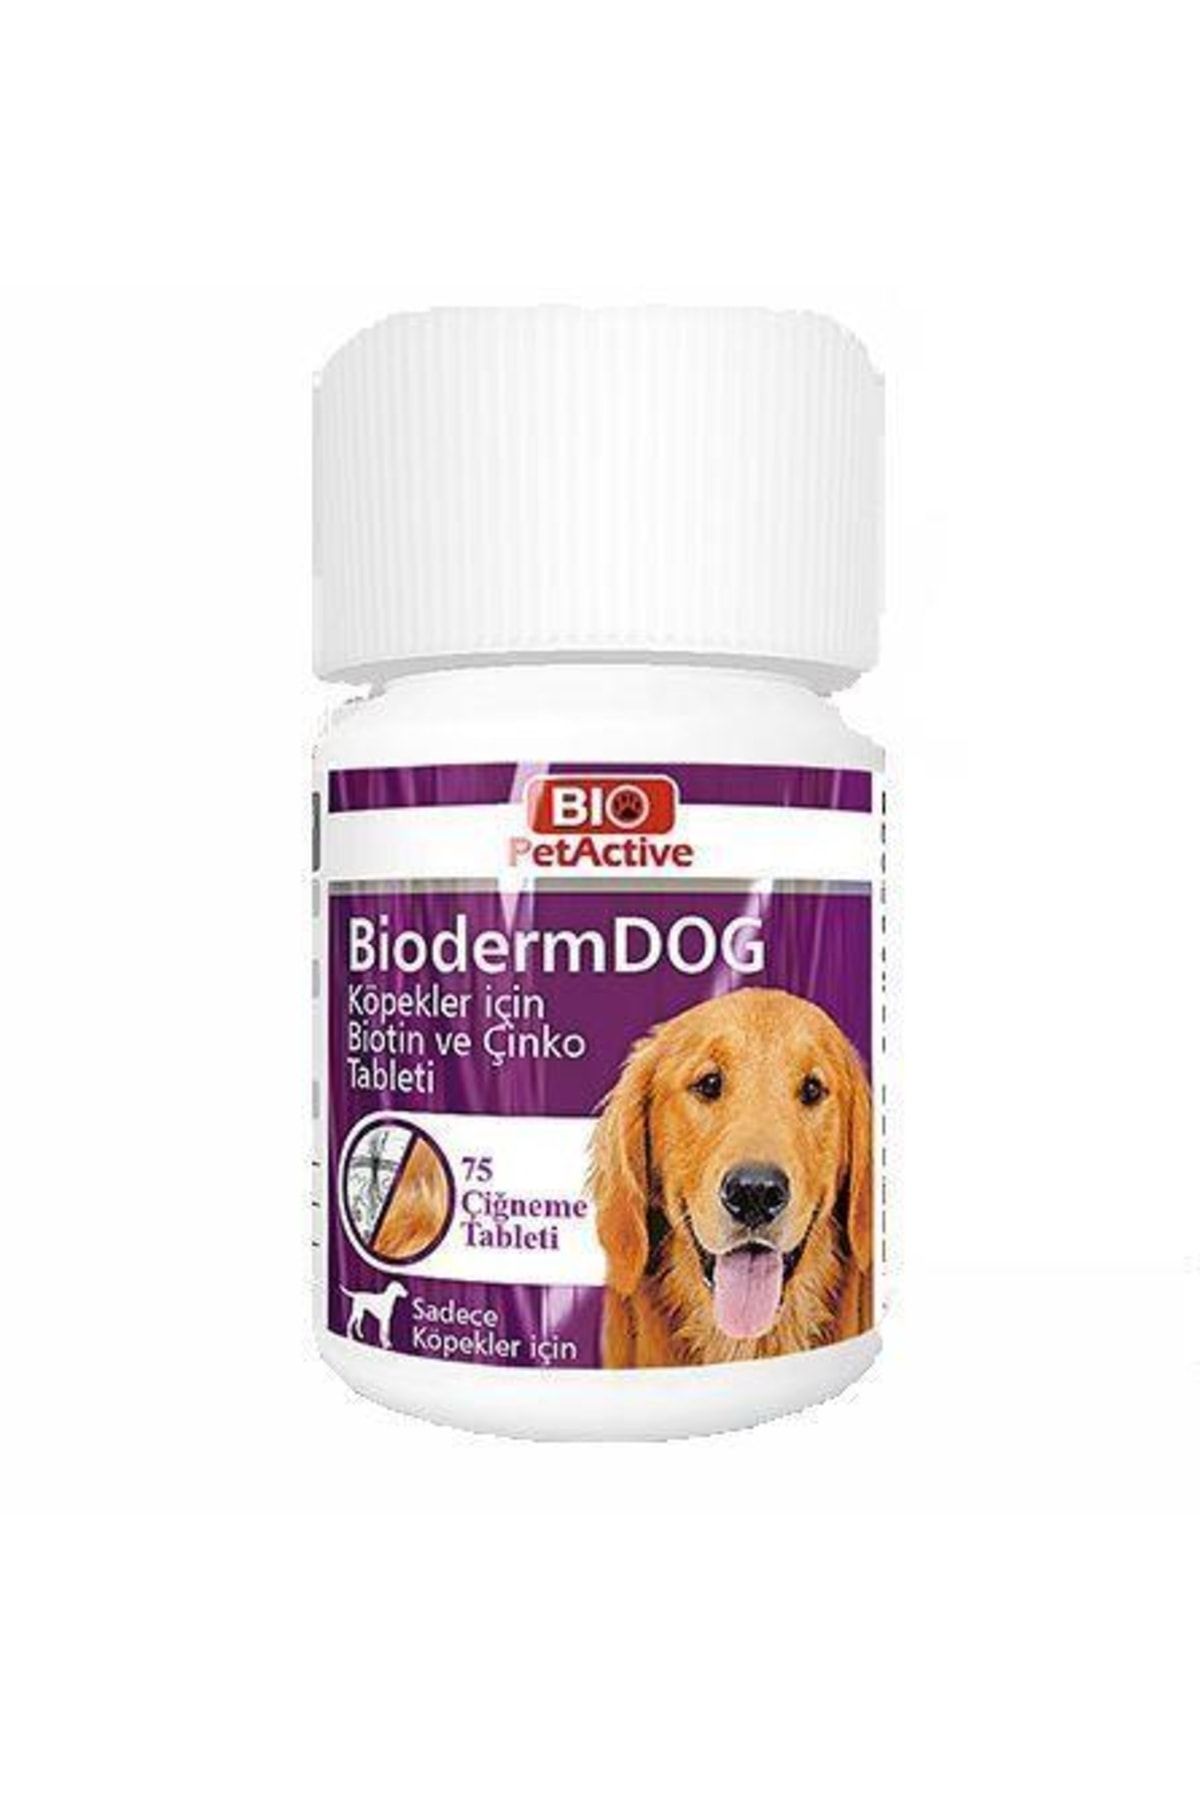 Bio PetActive Bio Pet Active Biodermdog Köpek Için Çinko Çiğneme Tableti 75 Adet